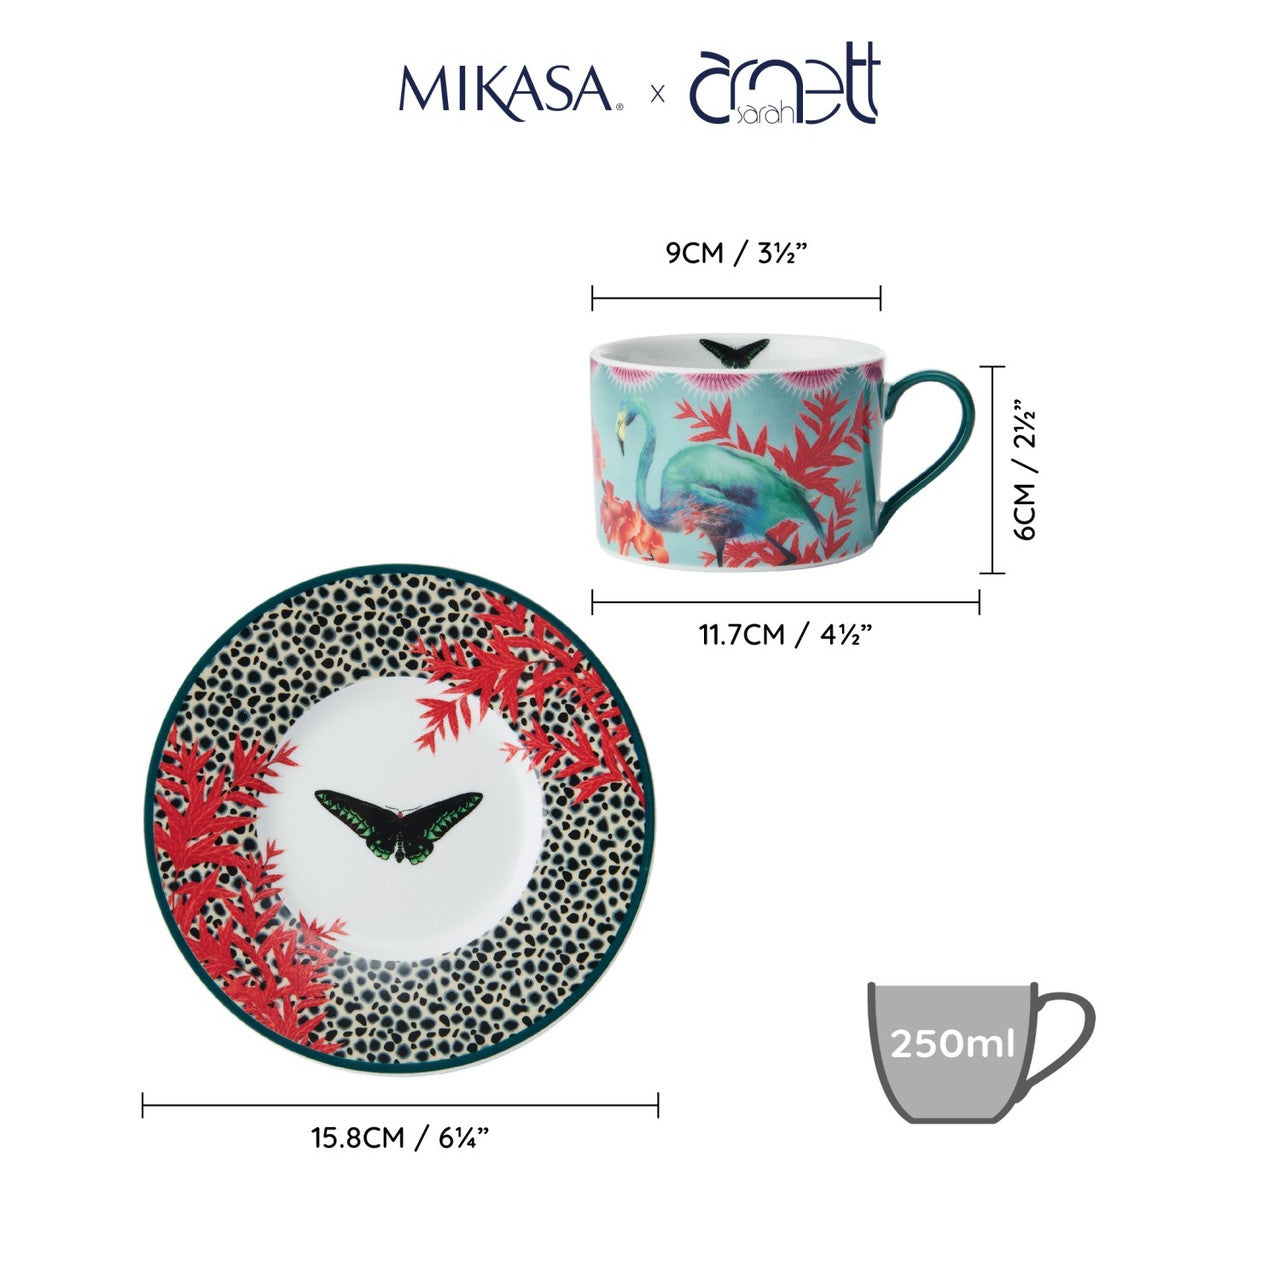 Mikasa x Sarah Arnett Porcelain Cup and Saucer Set 250ml